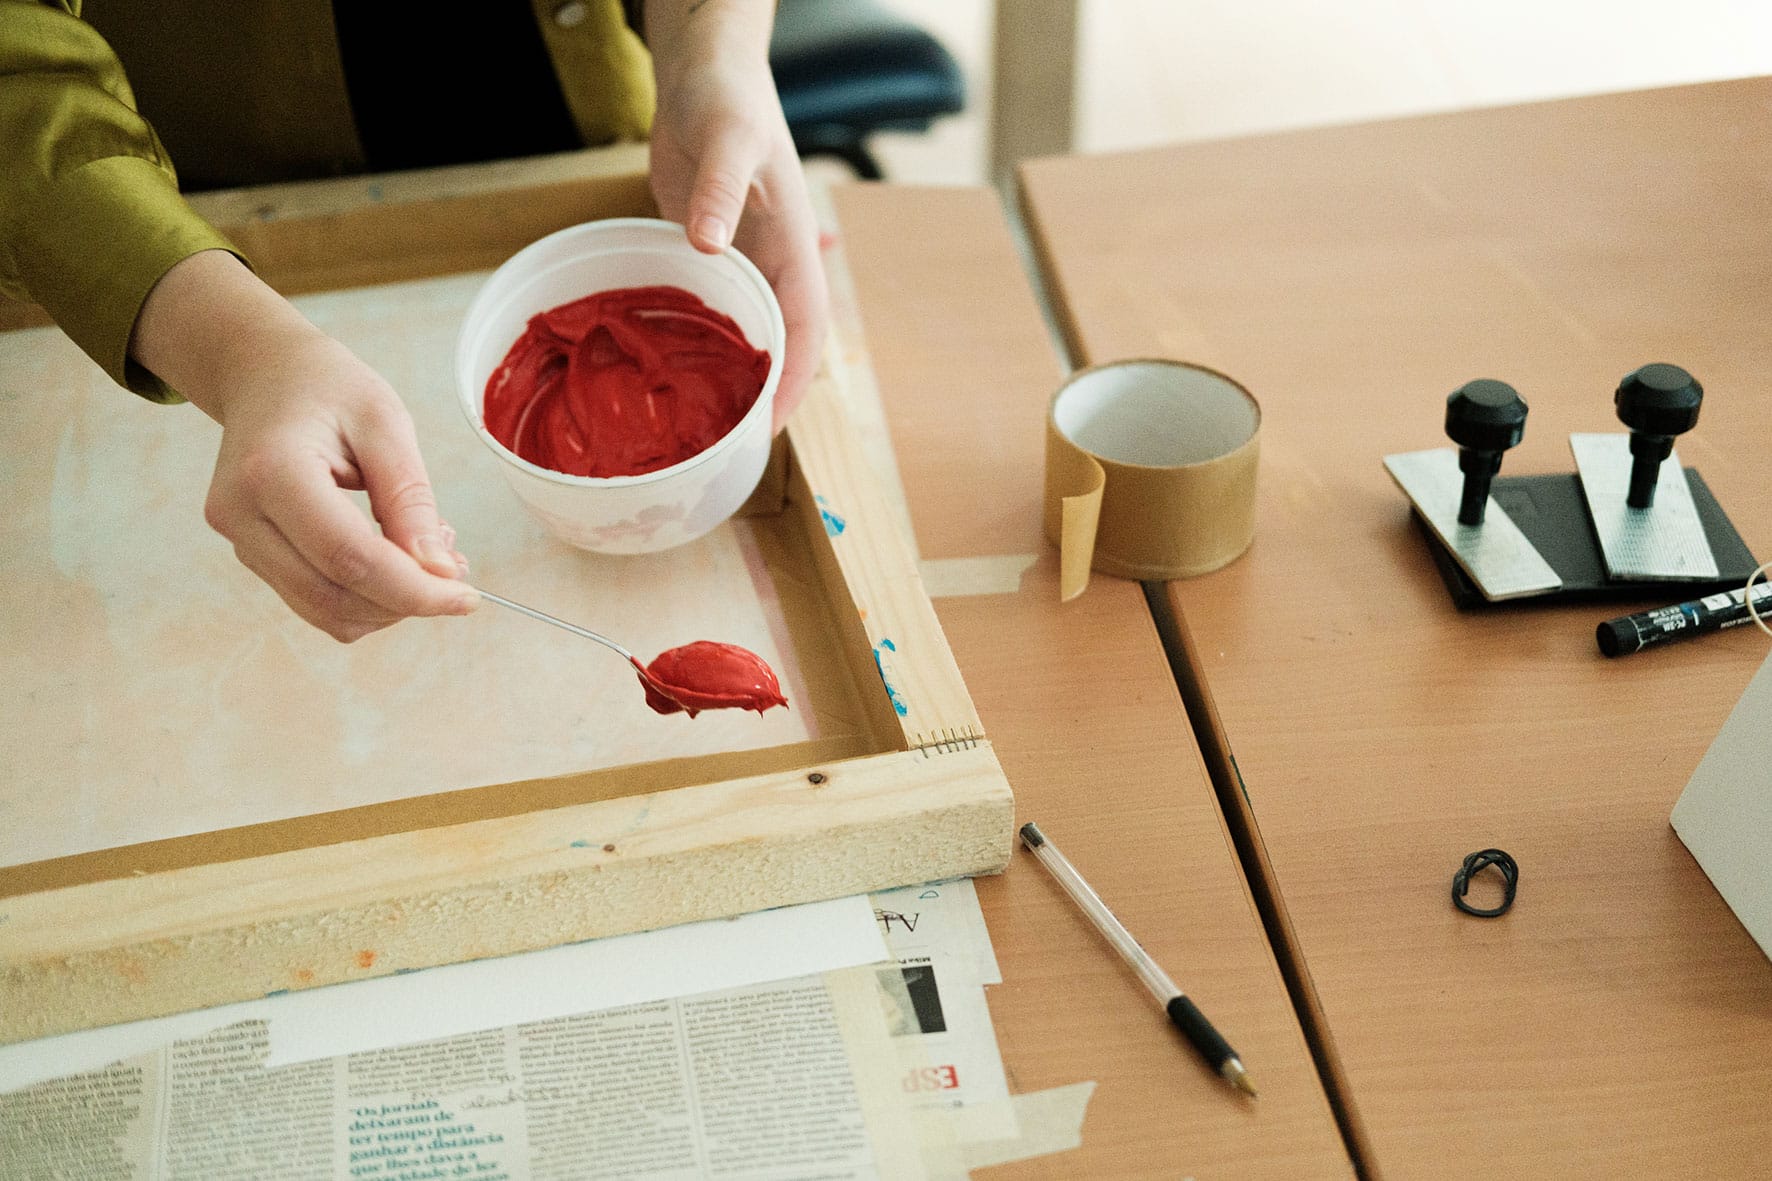 Artista coloca tinta vermelha na superfície de tela, com o auxilio de colher.